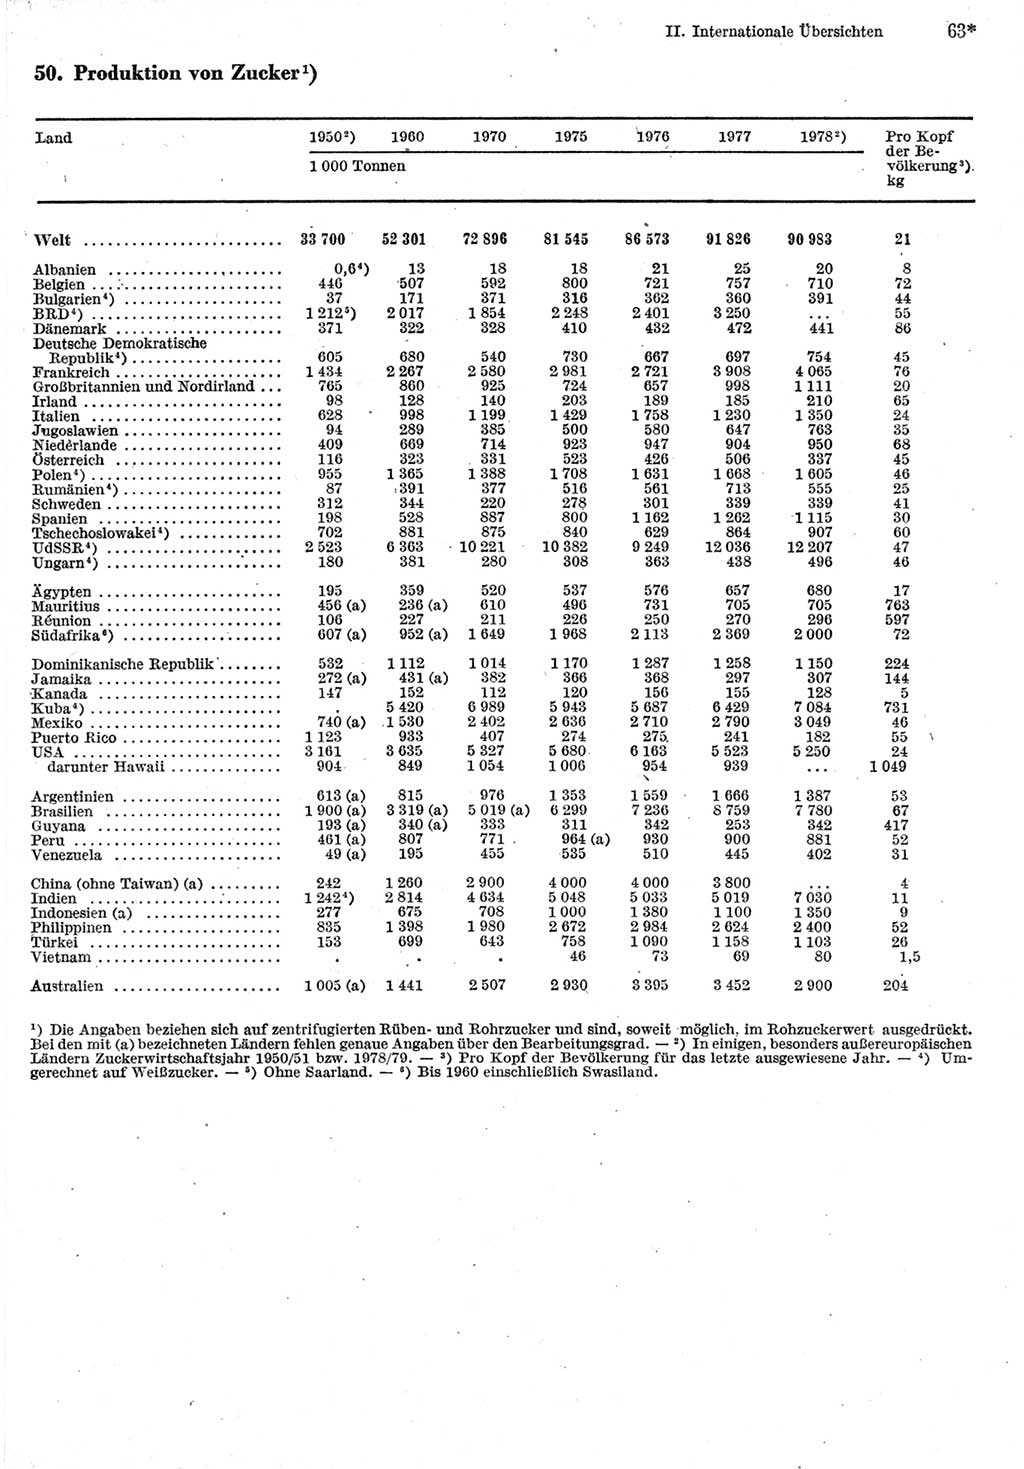 Statistisches Jahrbuch der Deutschen Demokratischen Republik (DDR) 1980, Seite 63 (Stat. Jb. DDR 1980, S. 63)